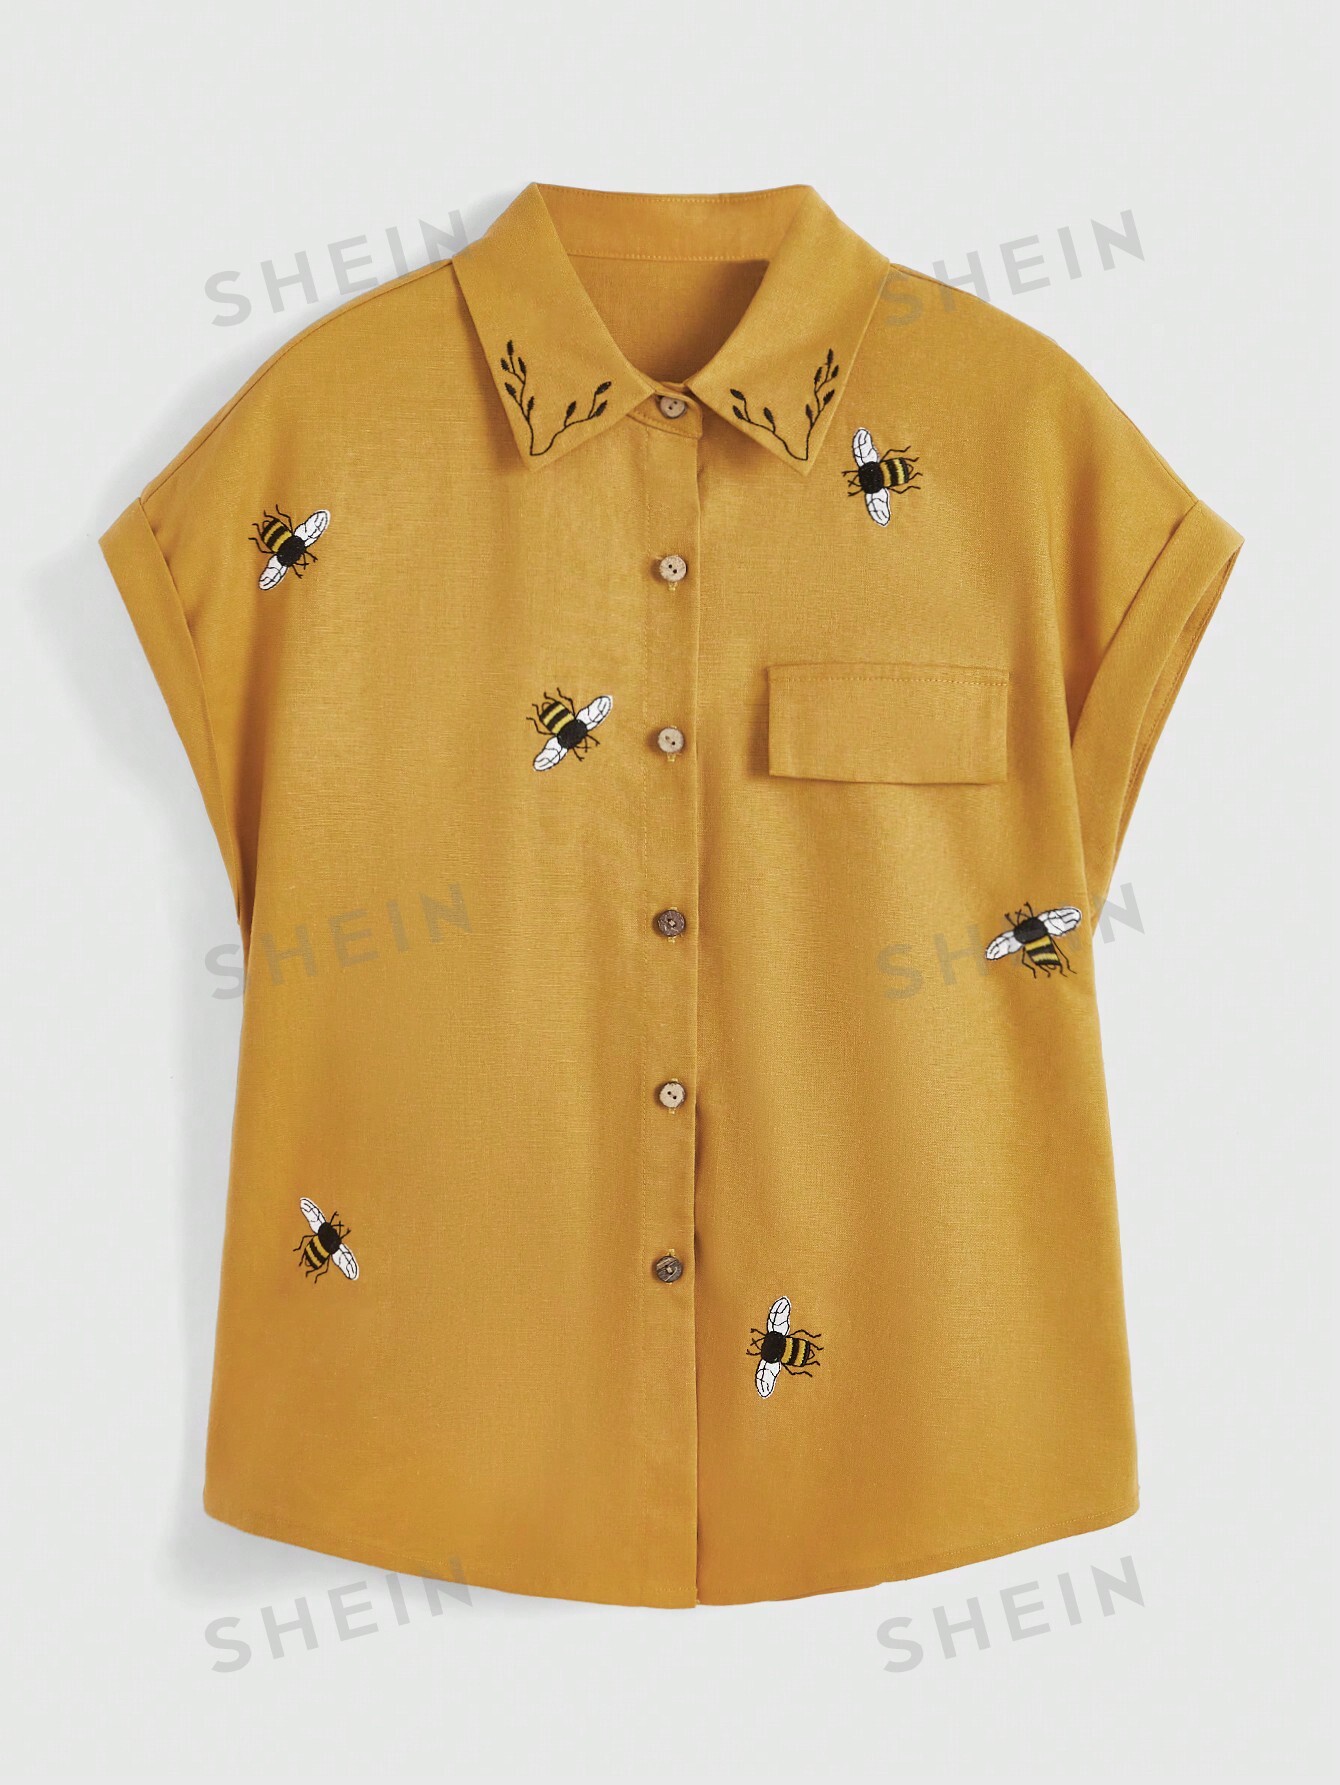 ROMWE Fairycore Женская рубашка с вышивкой пчелы и рукавами «летучая мышь», абрикос romwe fairycore женское платье на тонких бретельках с растительной вышивкой абрикос